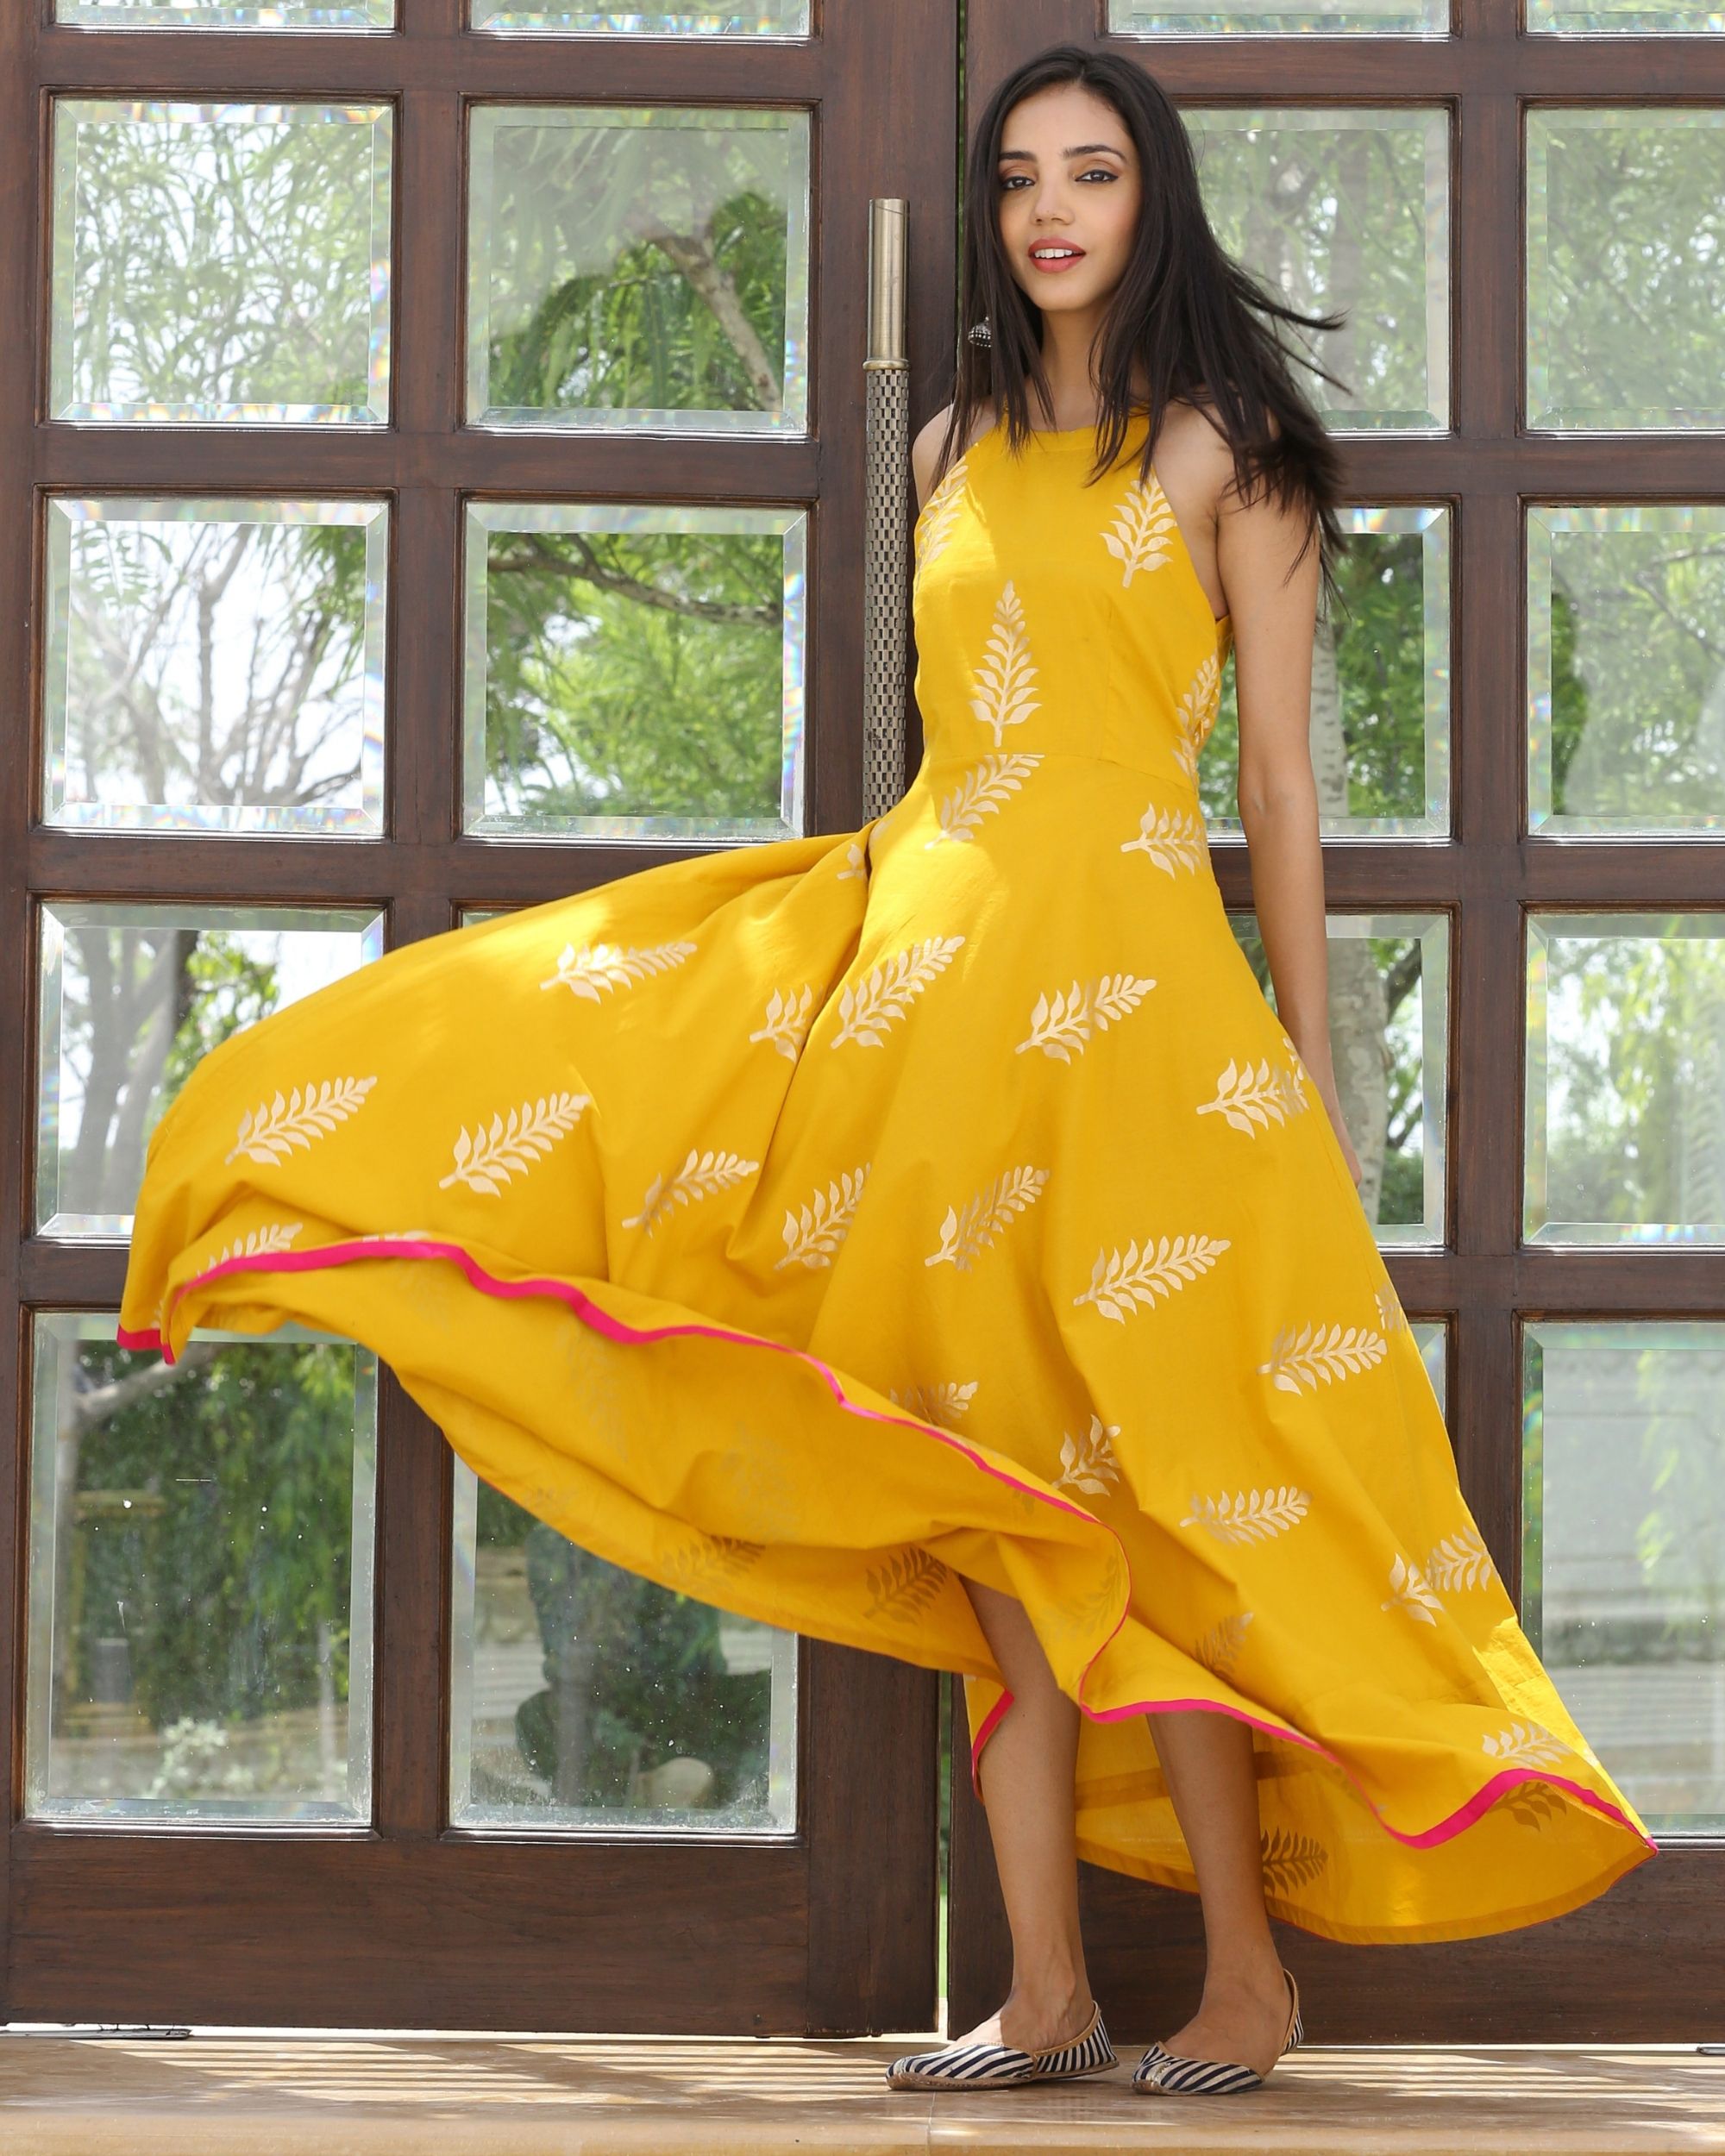 Mango printed maxi dress by Ambraee ...